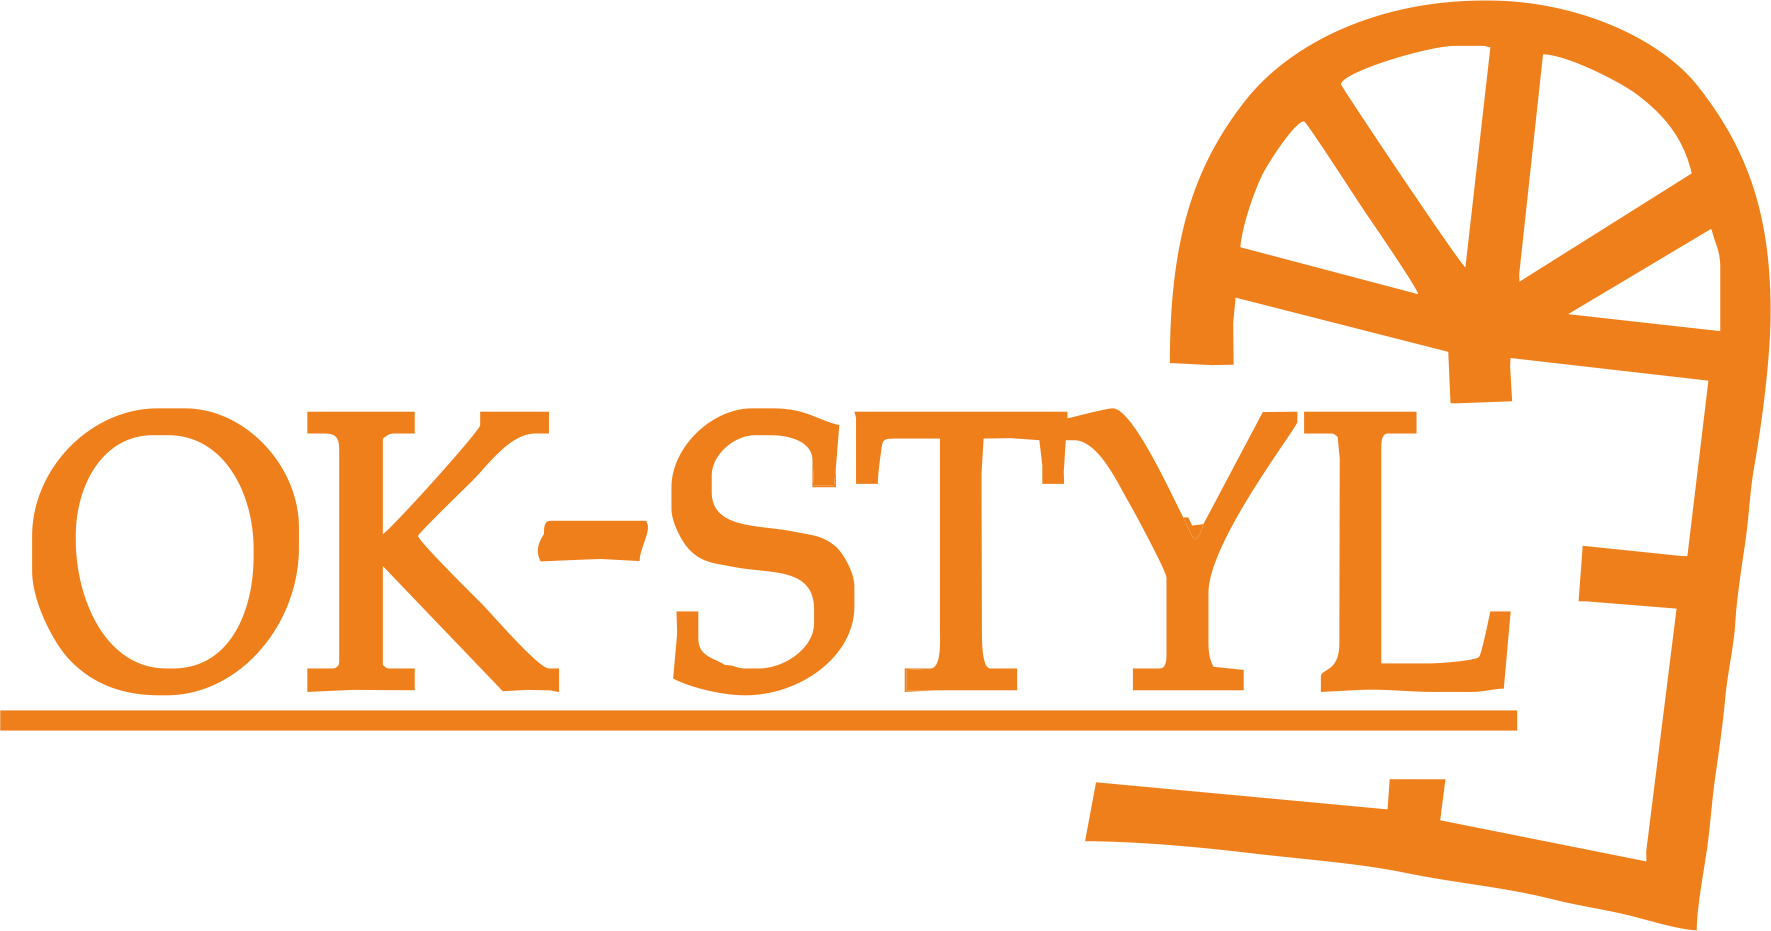 Ok-styl